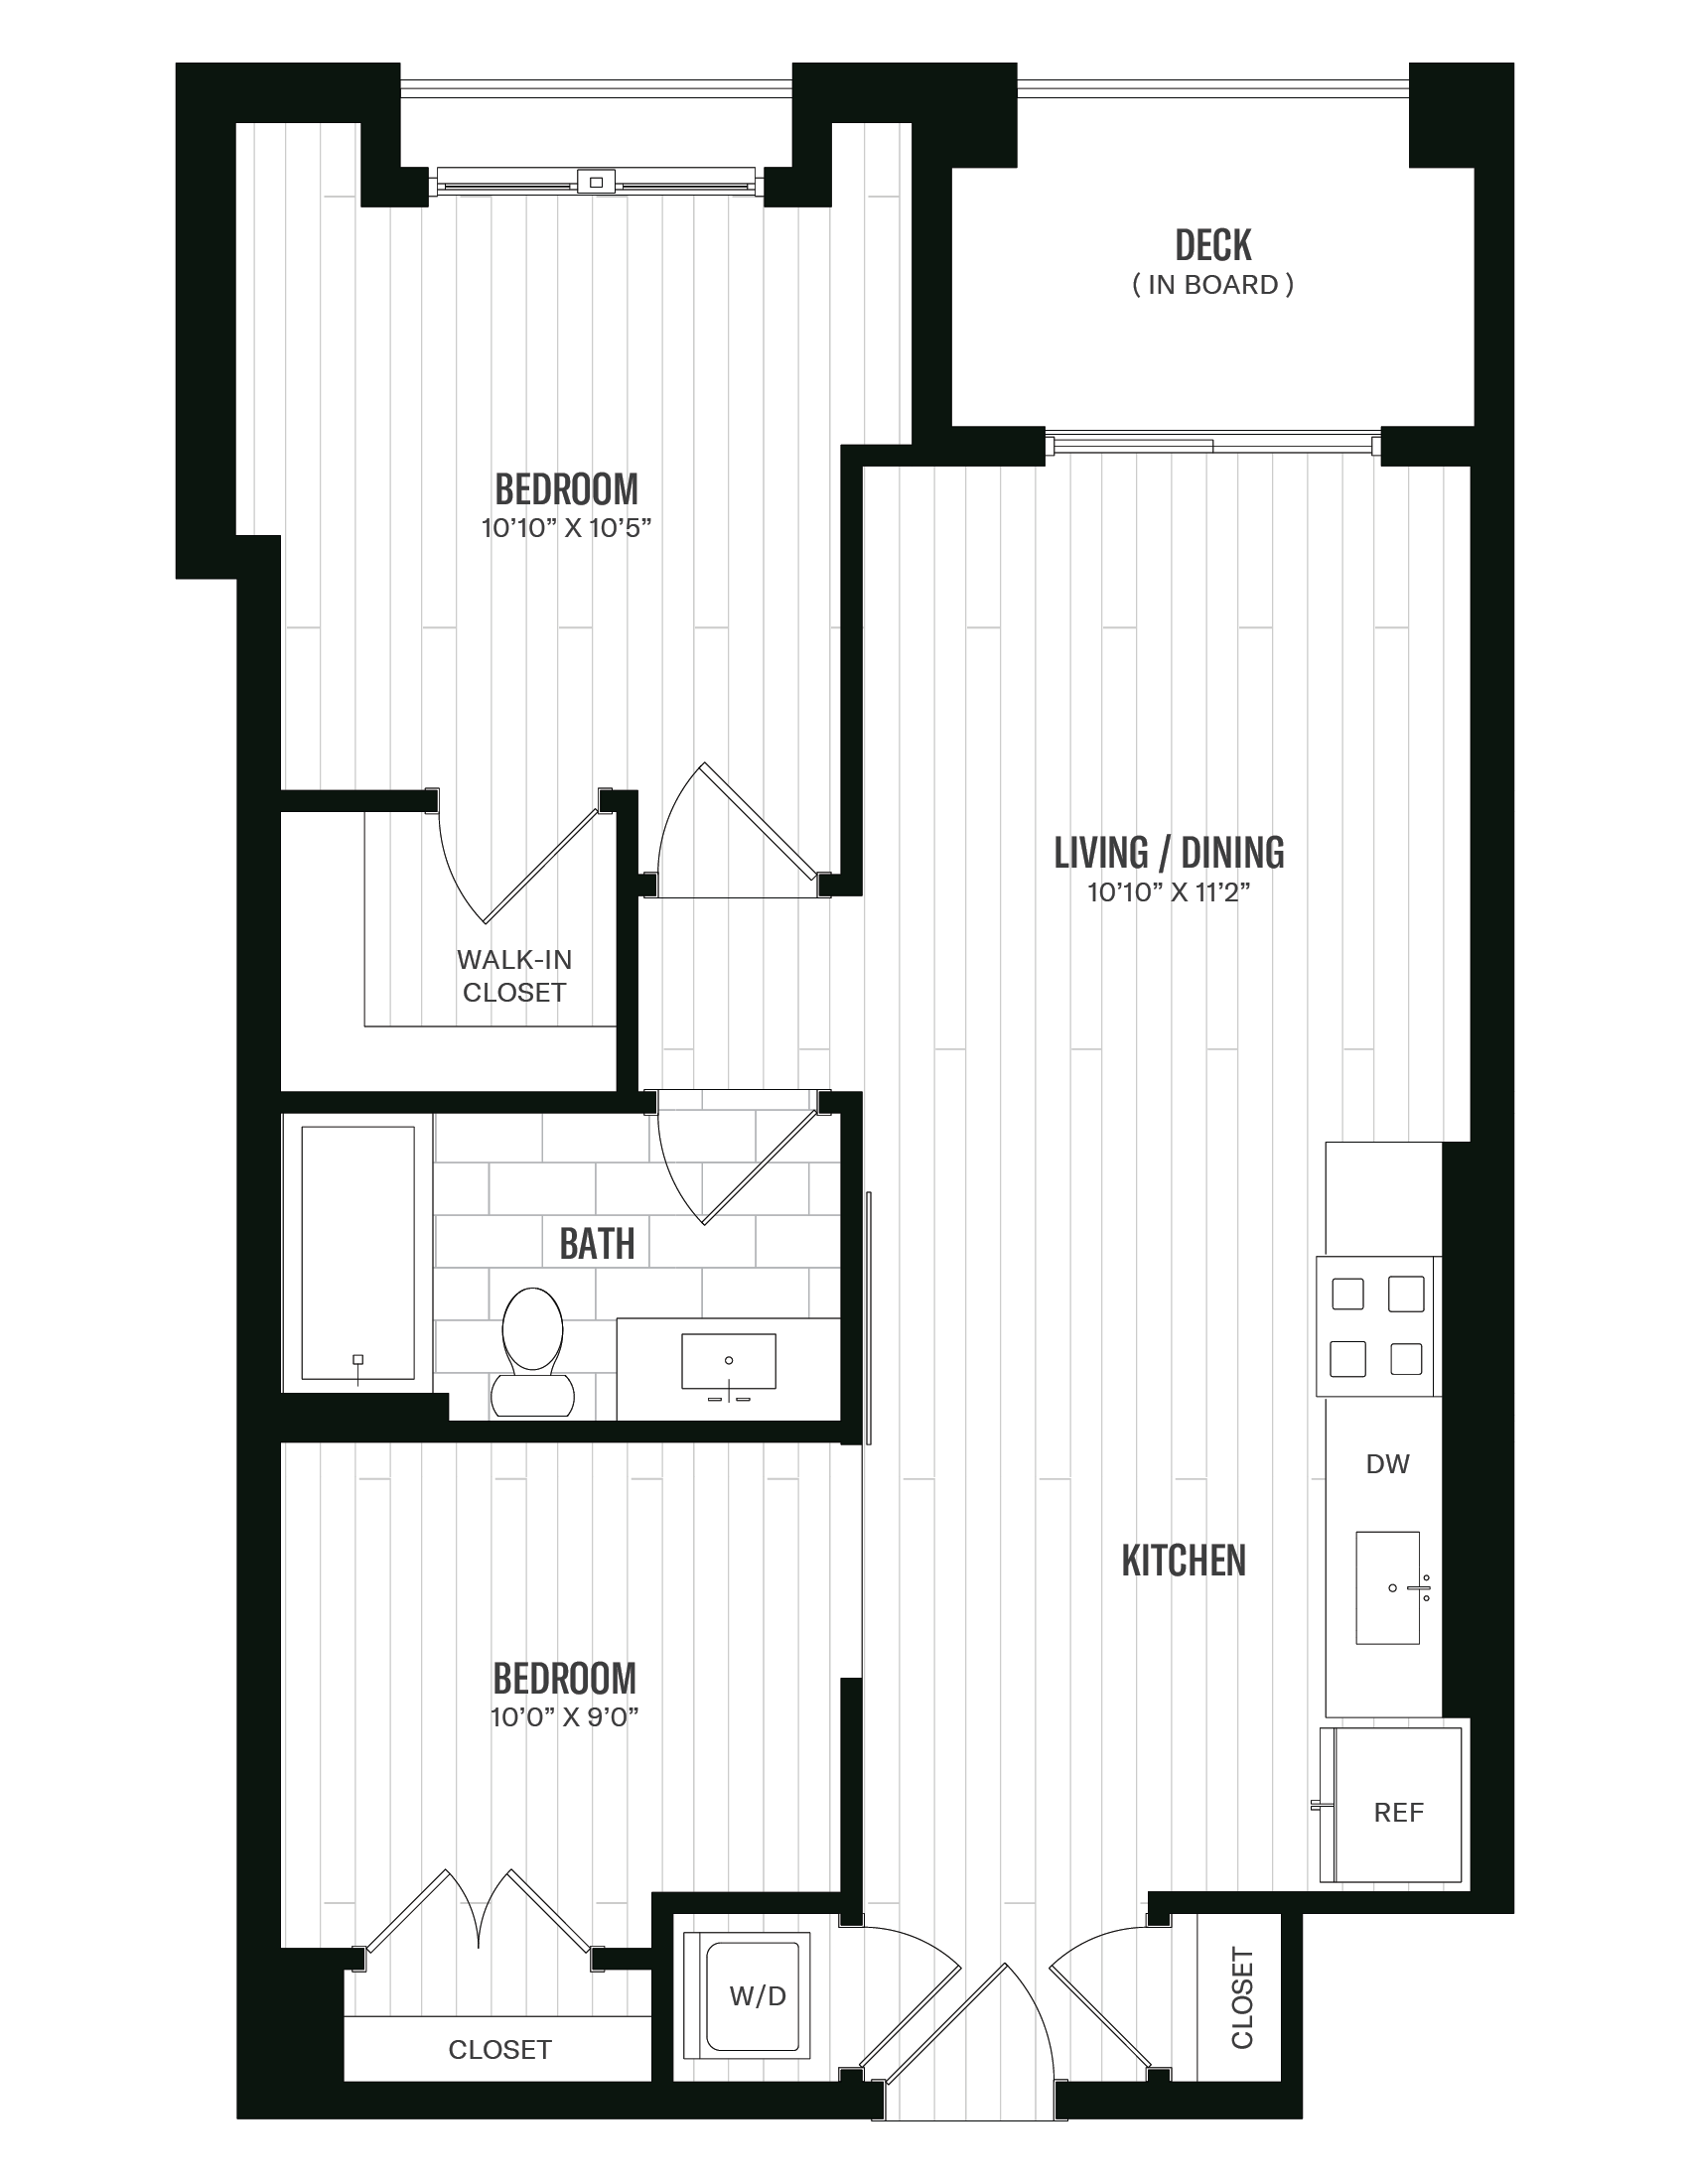 Floorplan image of unit 324